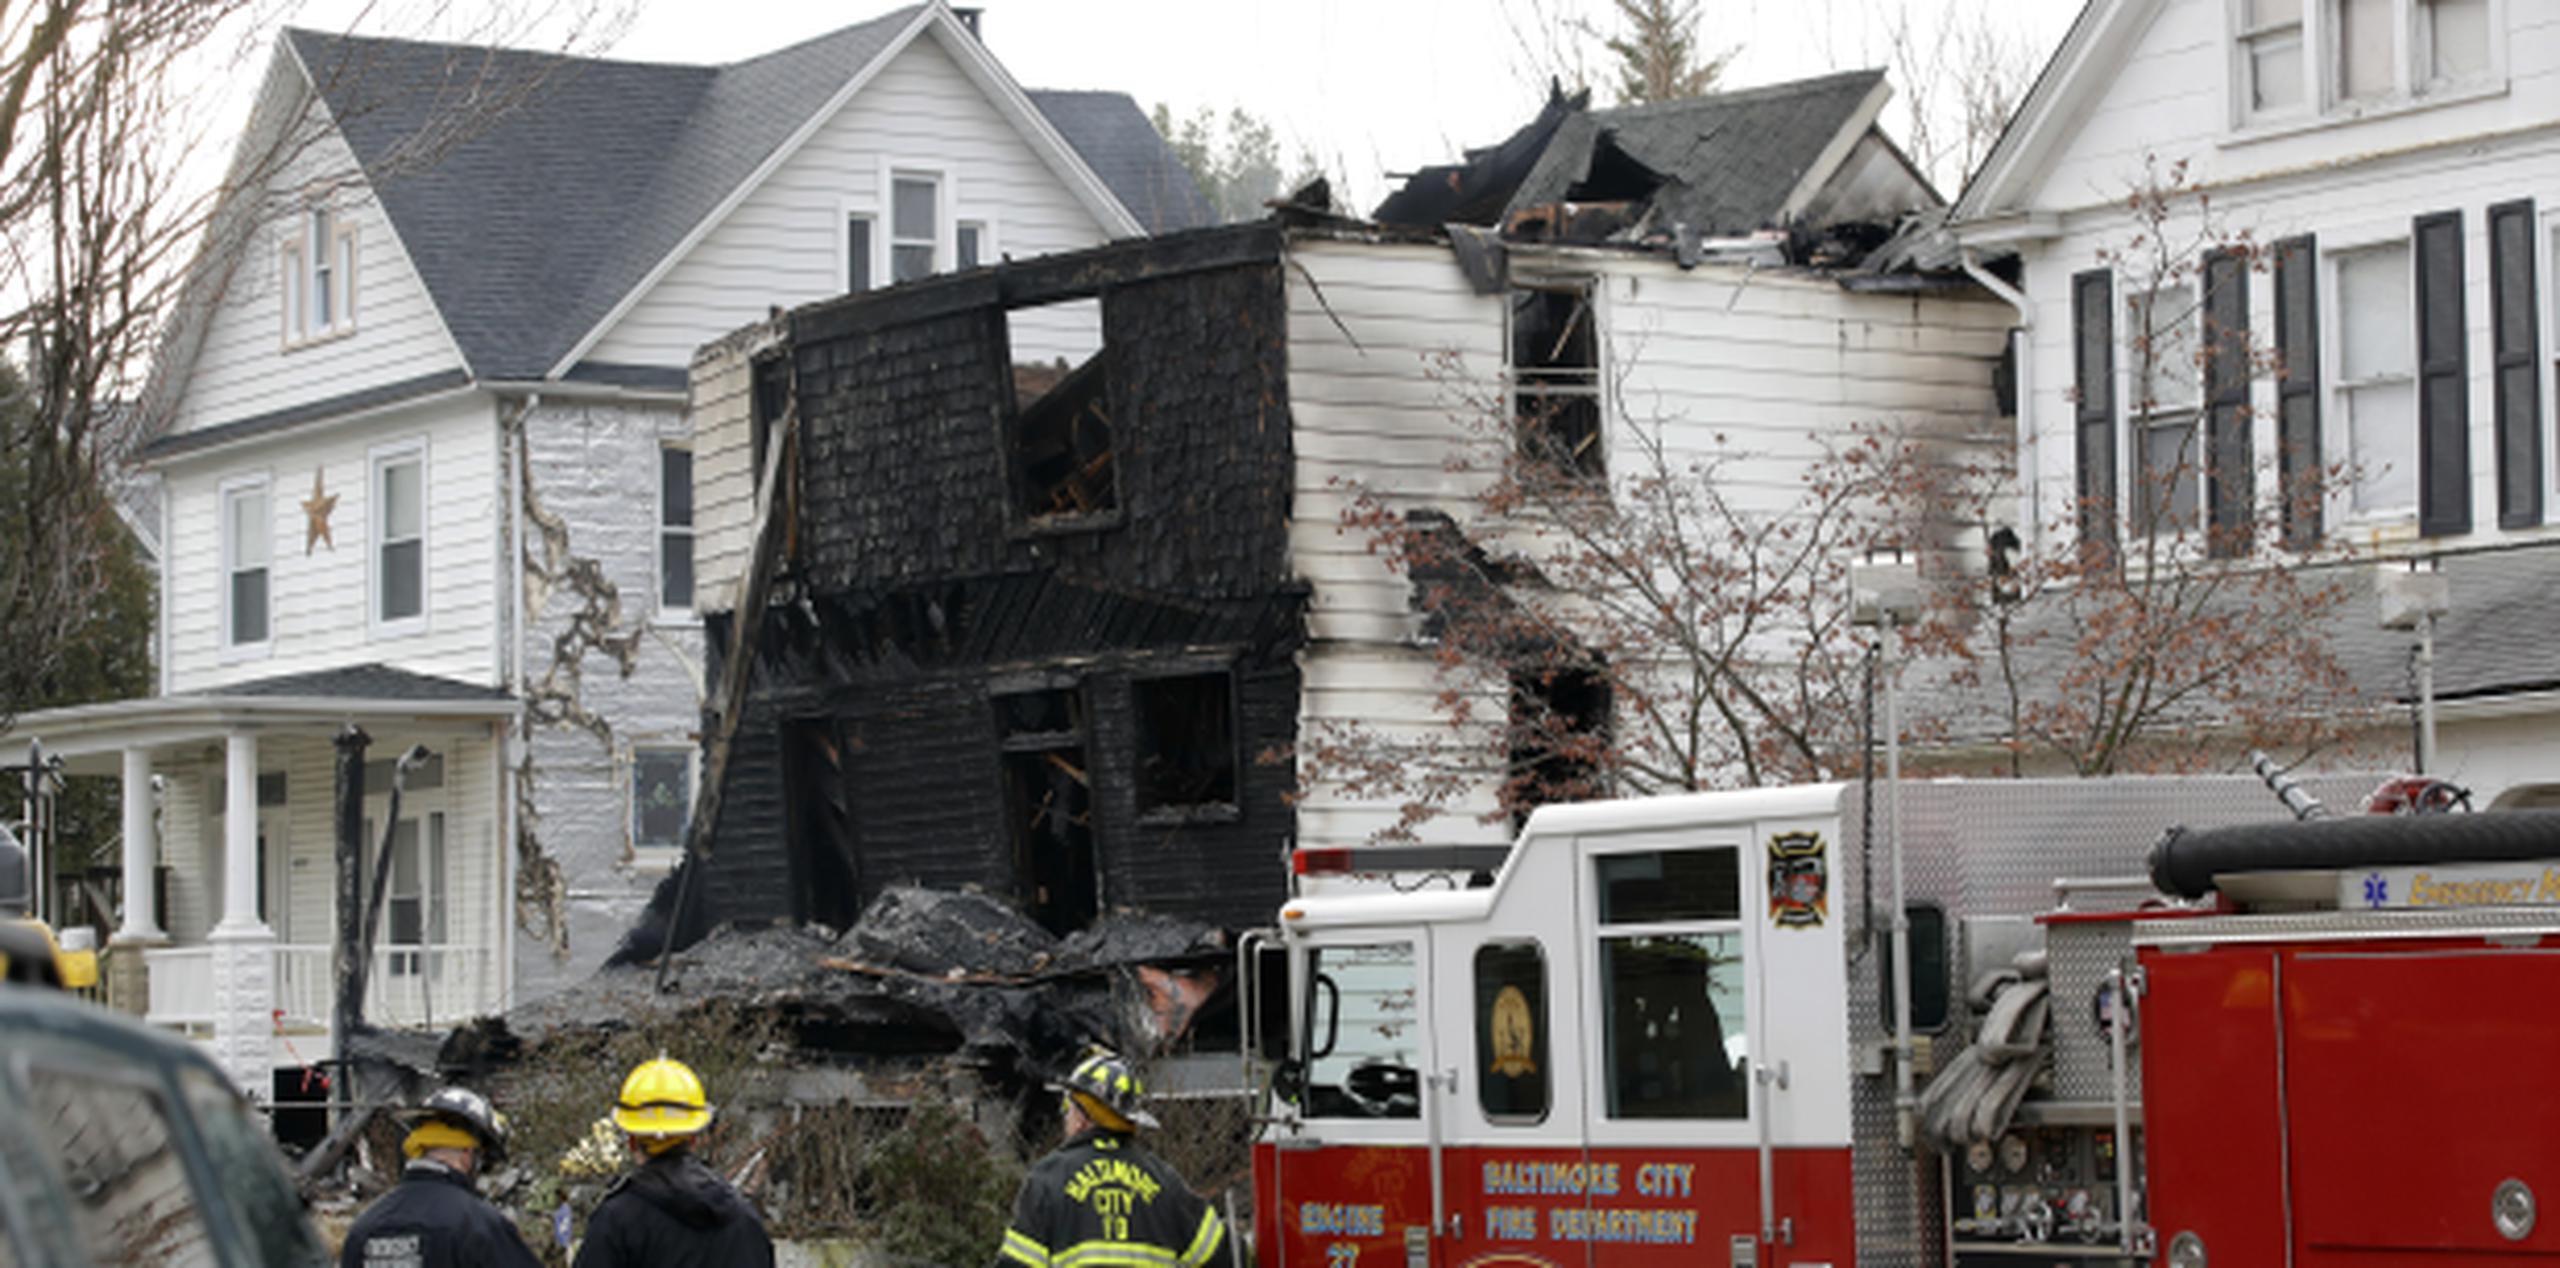 Funcionarios de los bomberos aparecen afuera de una casa que se quemó la mañana del jueves. (Prensa Asociada)